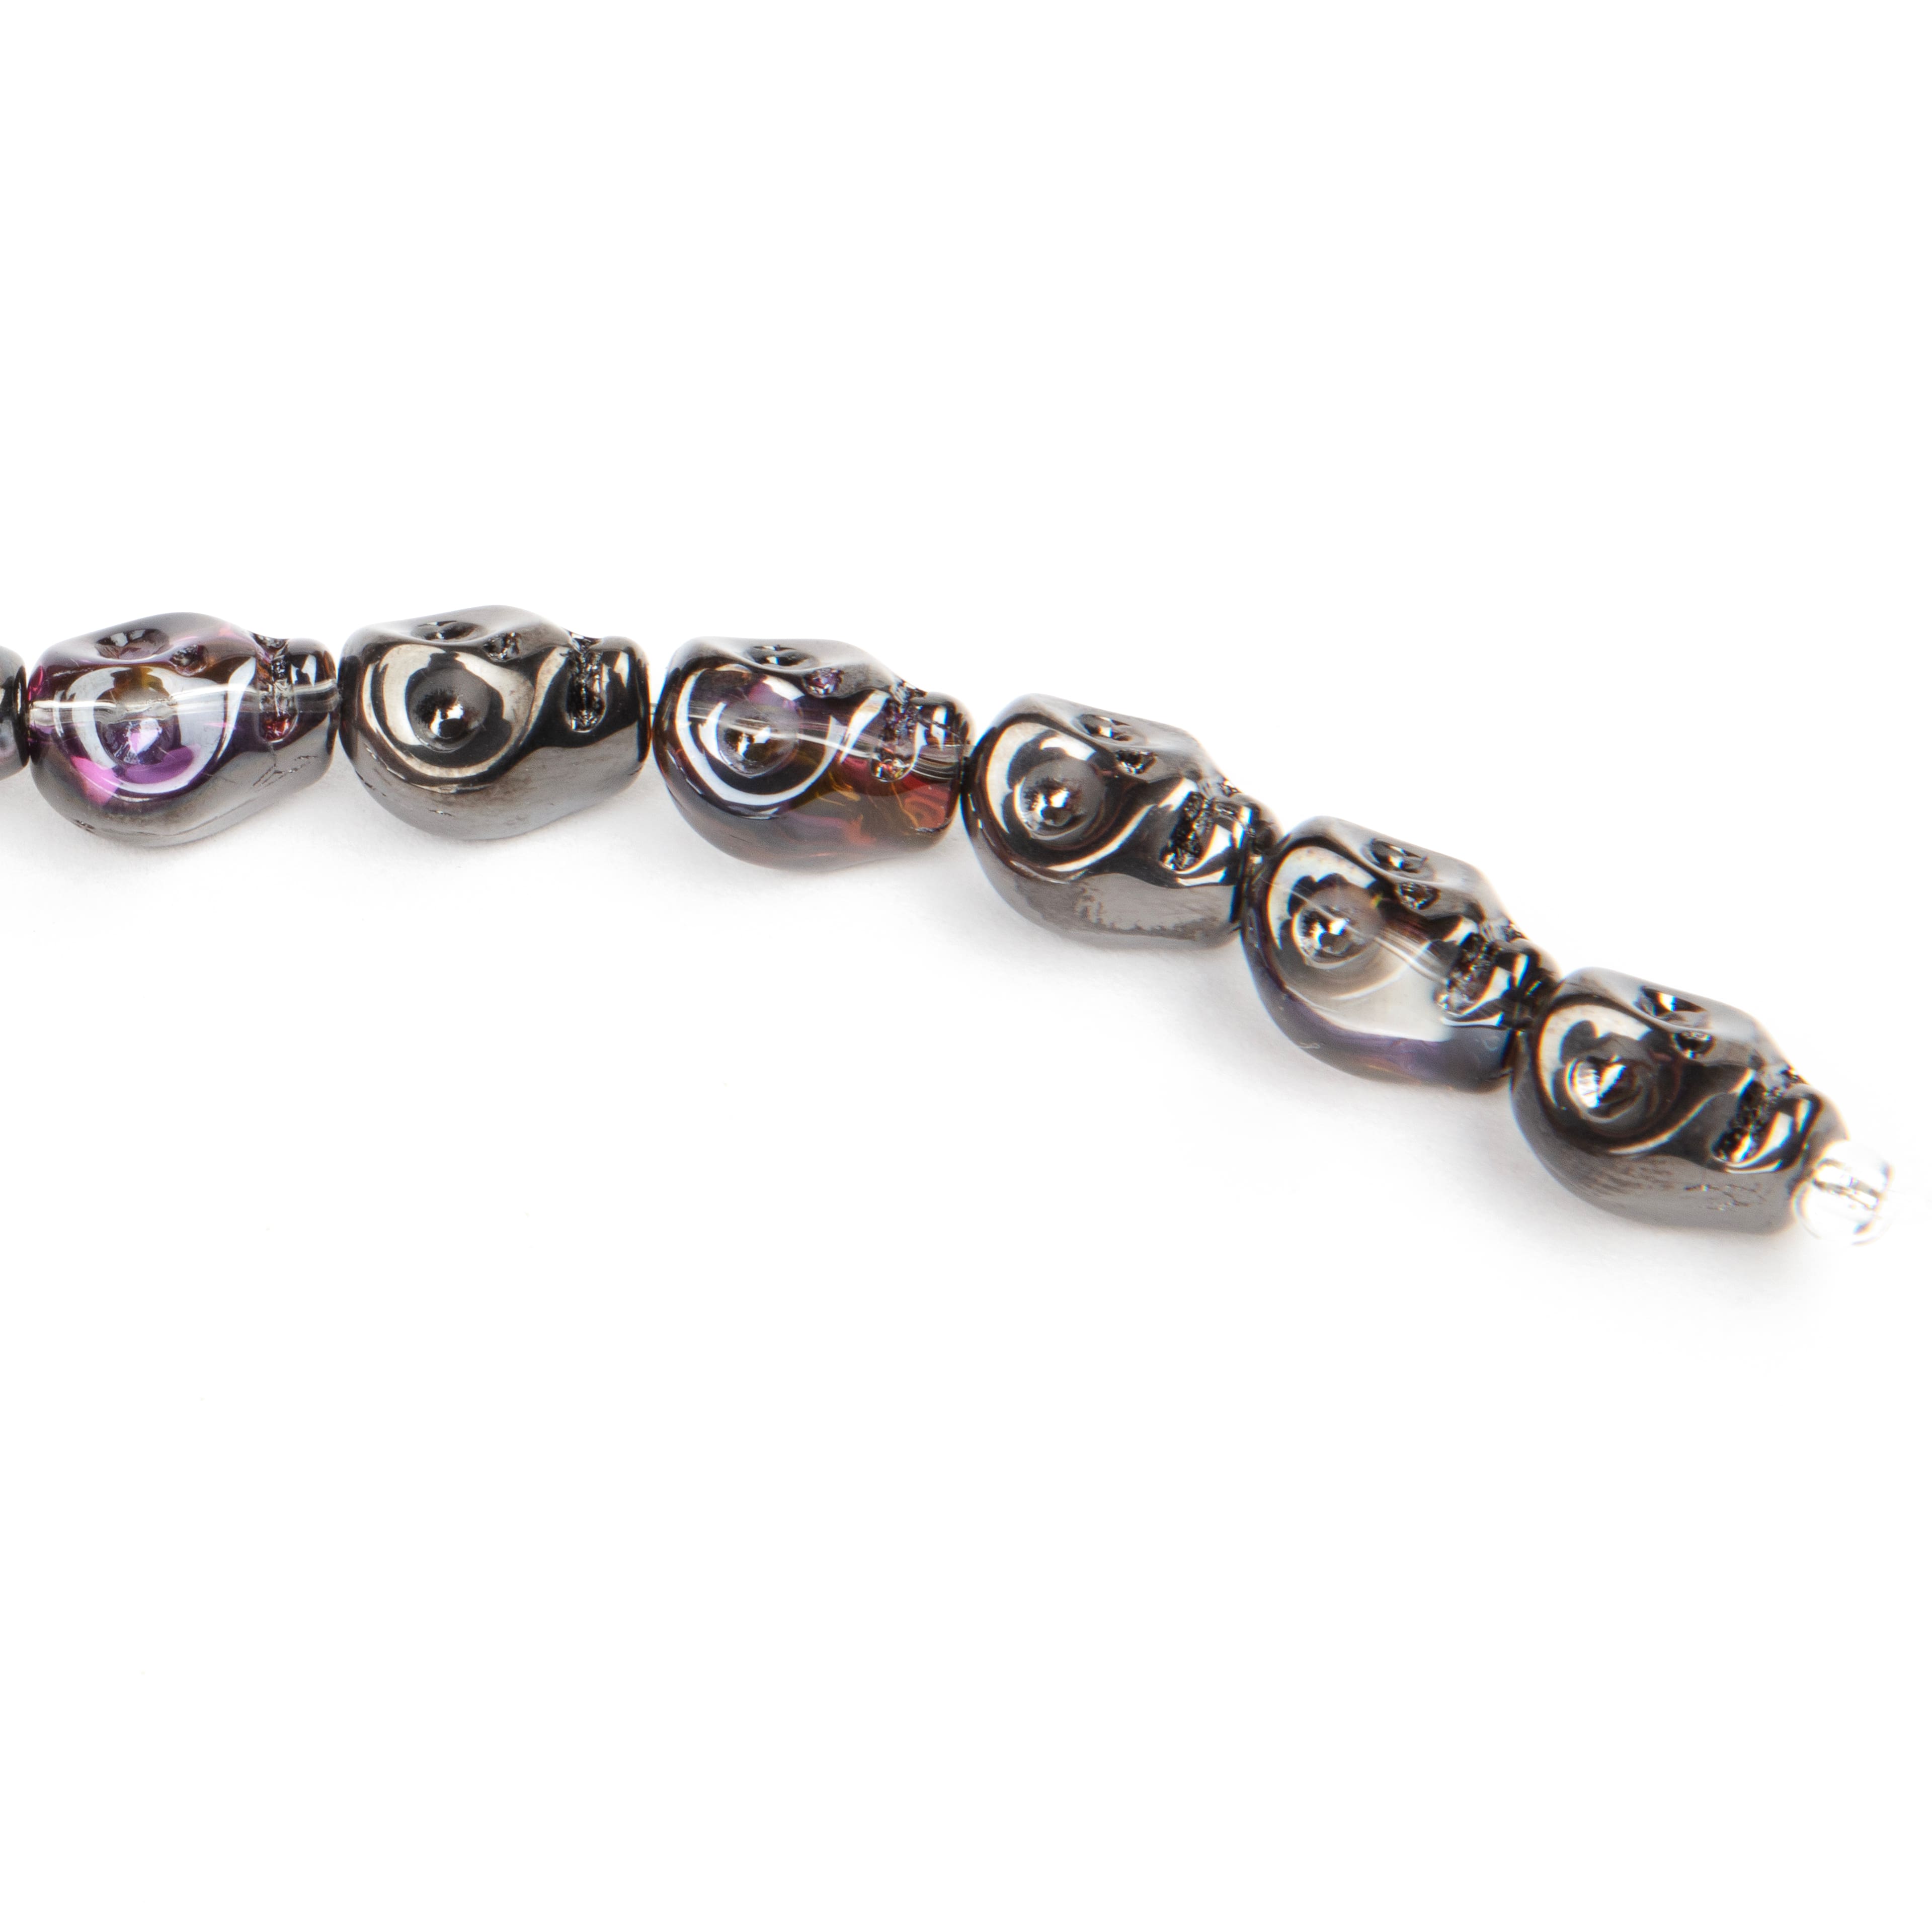 12 Pack: Black Glass Skull Beads, 10mm by Bead Landing&#x2122;